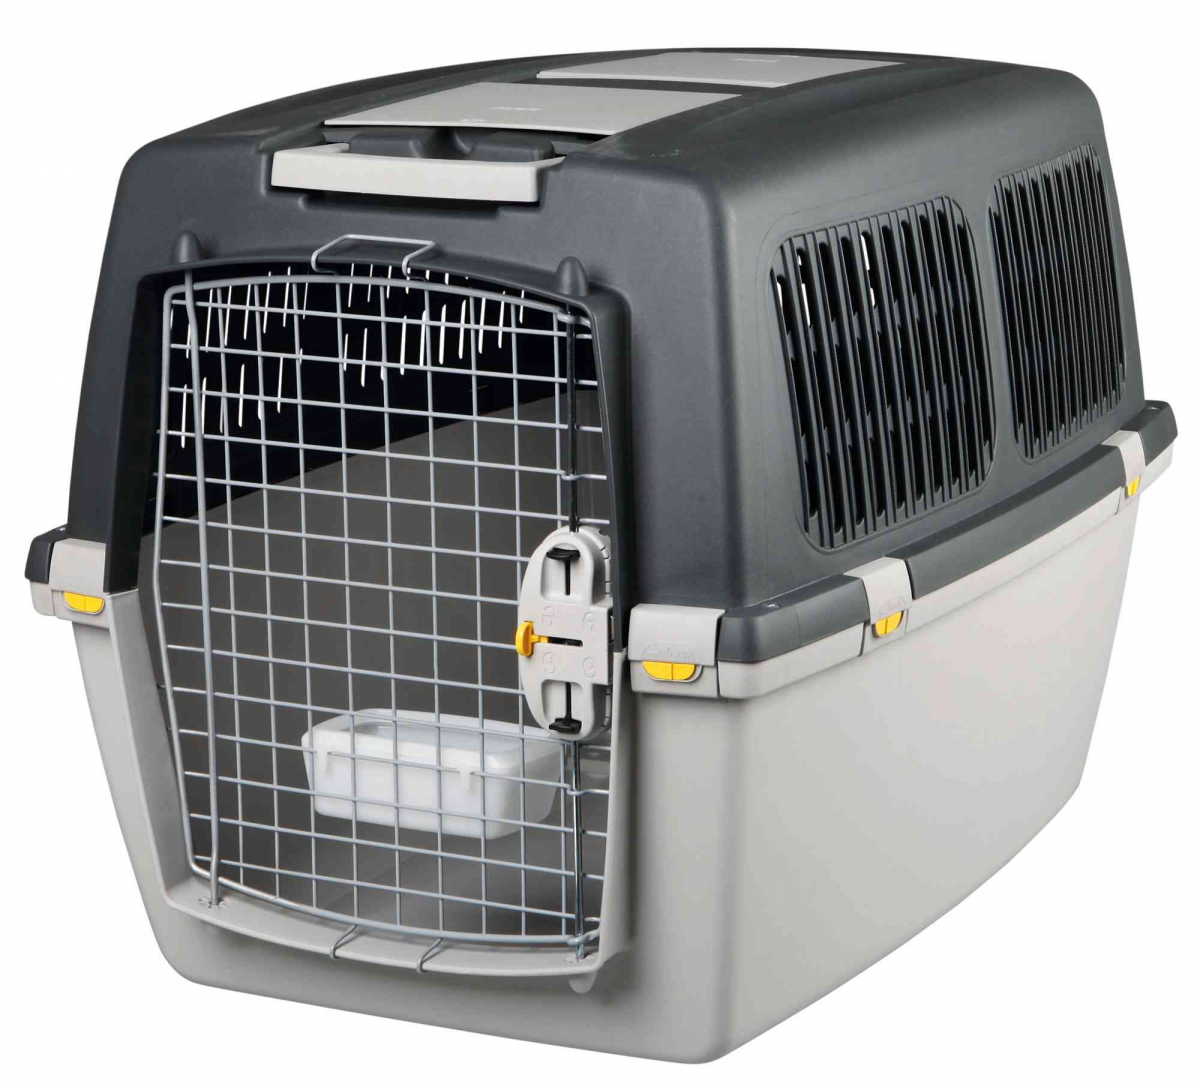 Cage et caisse de transport pour chien : Acheter pas cher